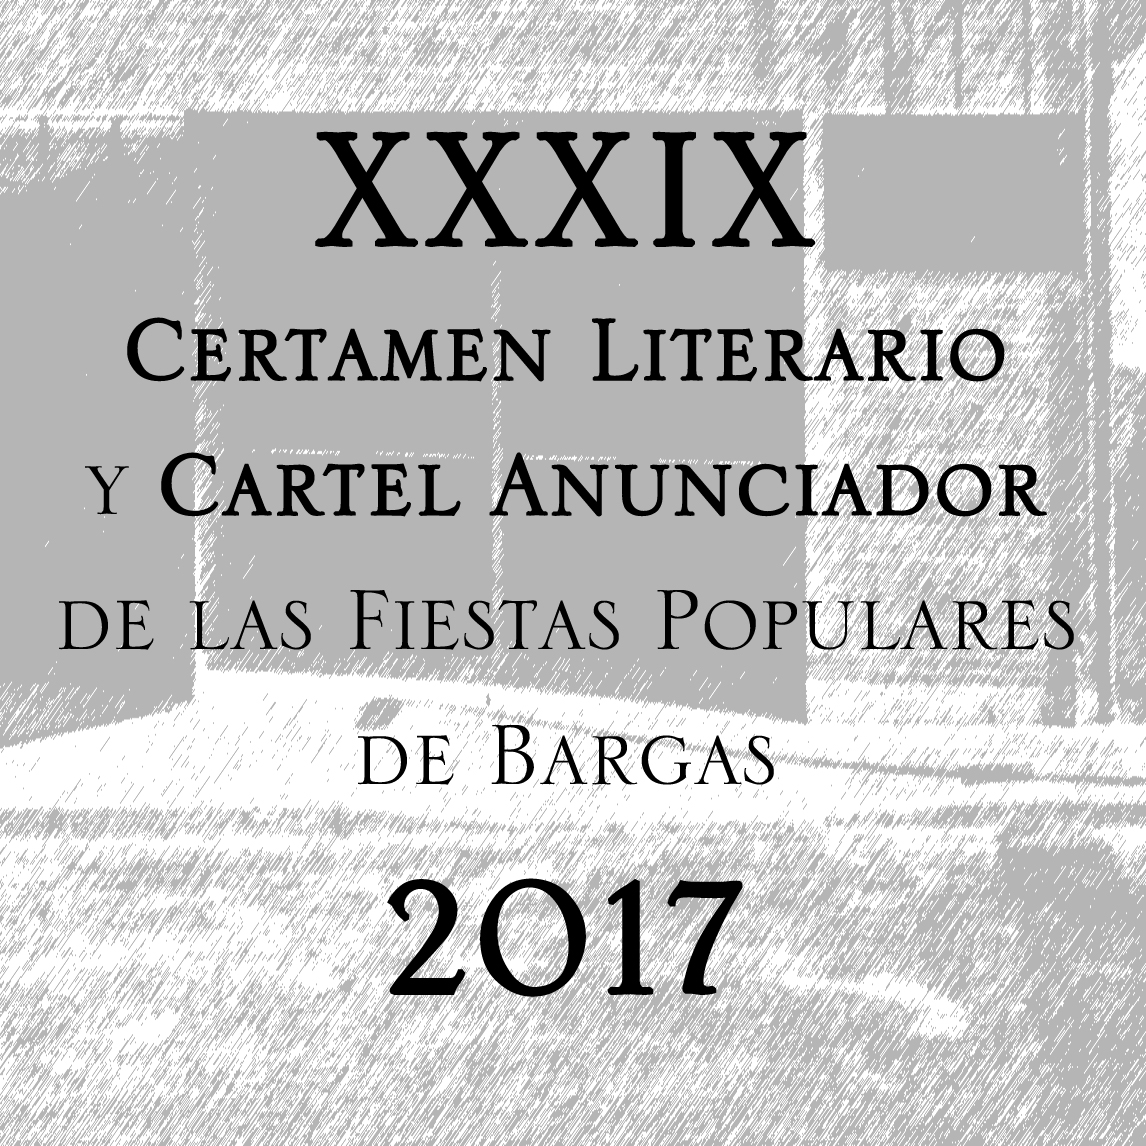 XXXIX Certamen Literario y Cartel Anunciador de las Fiestas Populares de Bargas 2017 – BASES